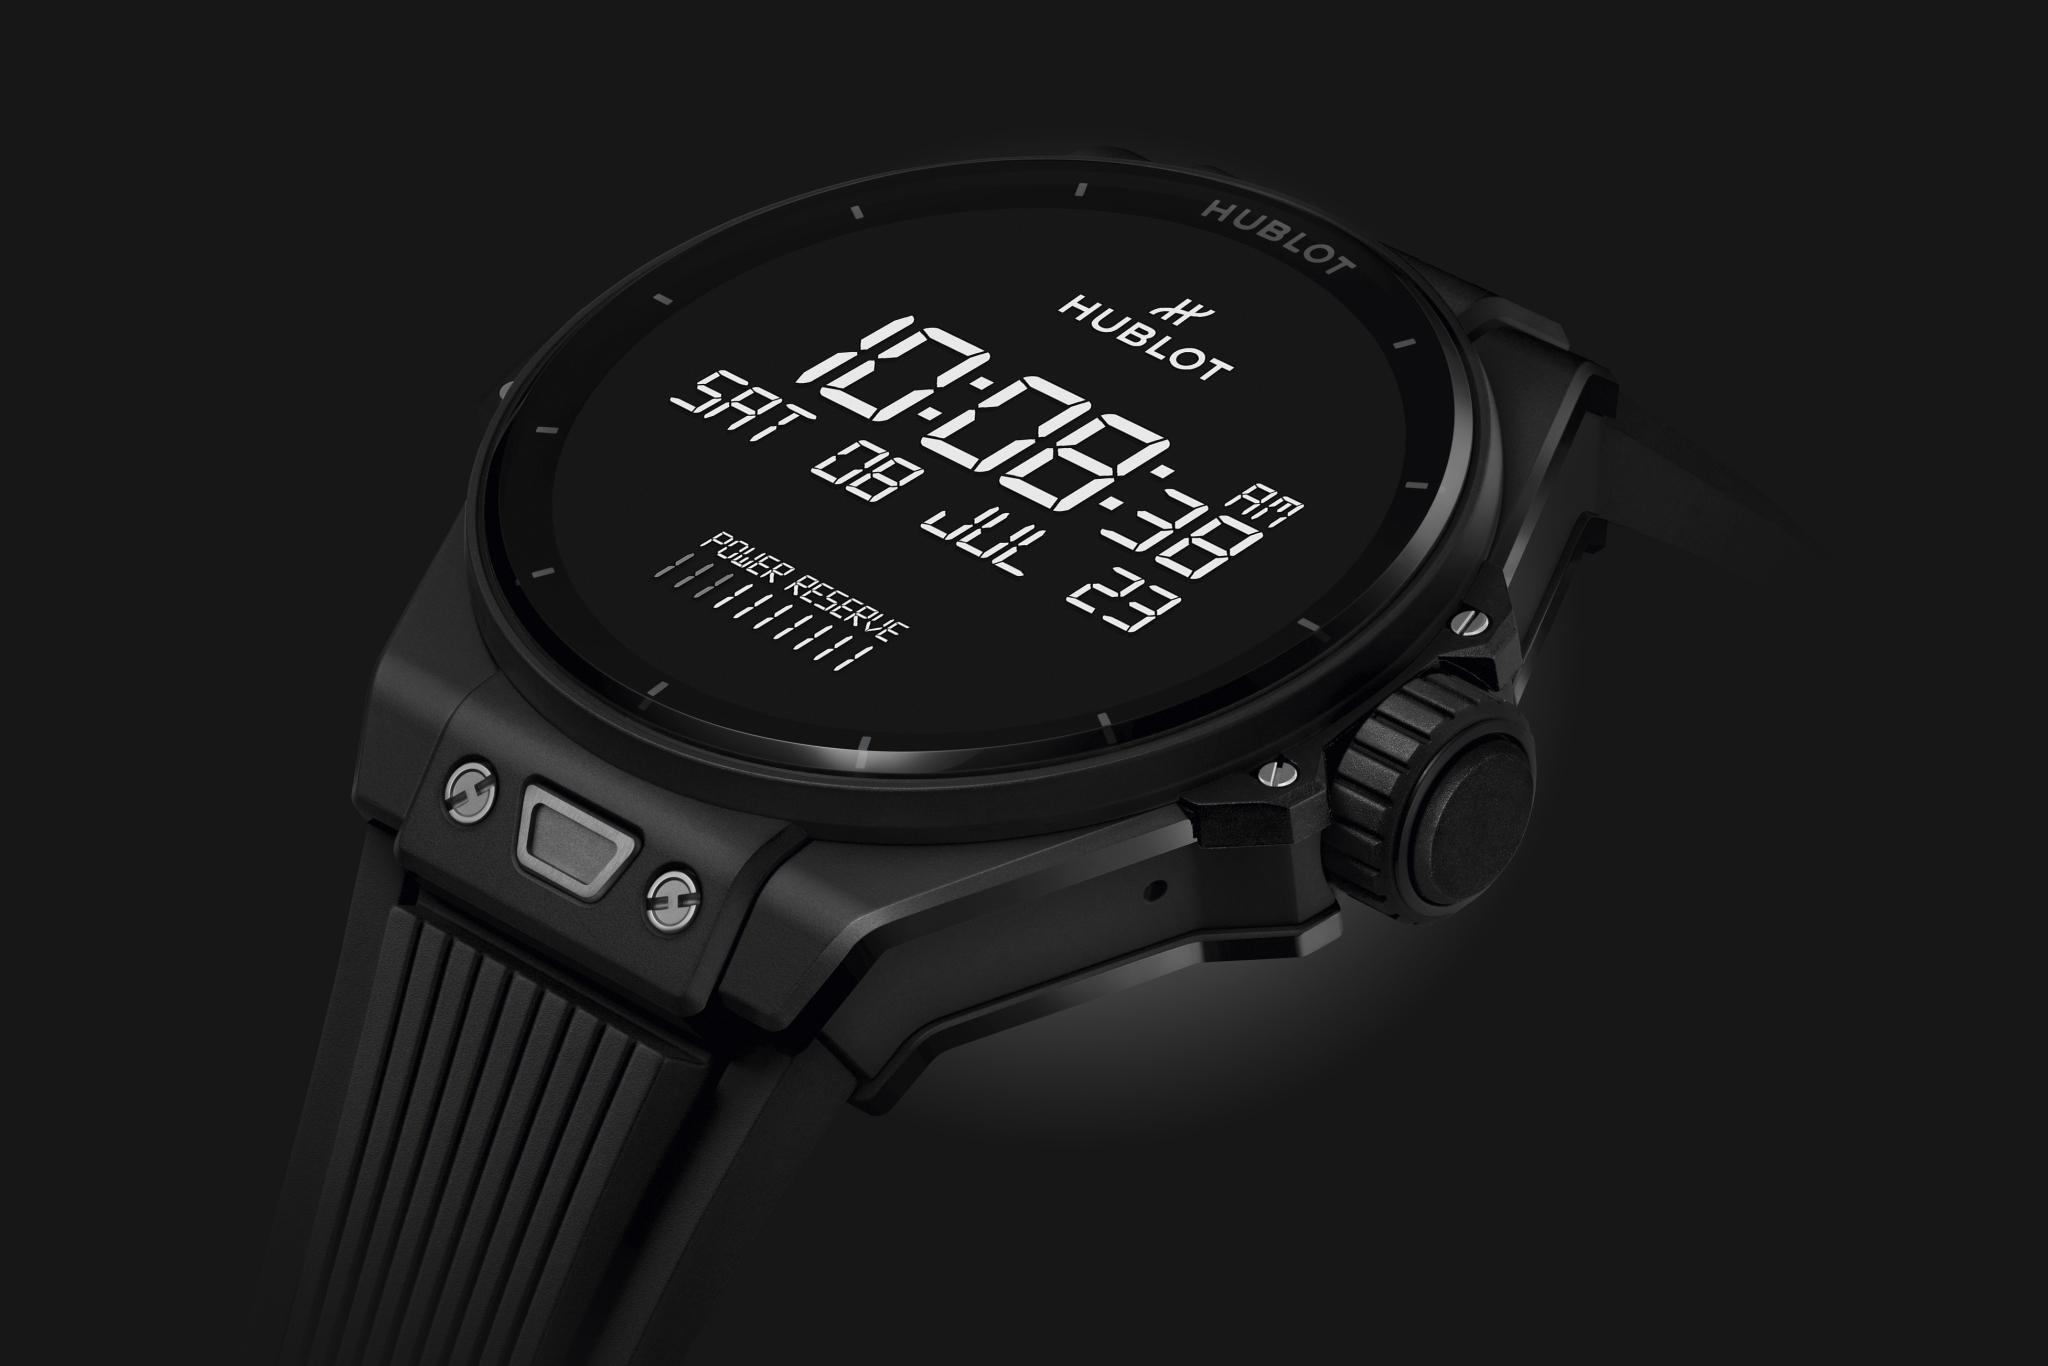 La nouvelle smartwatch de Hublot fonctionne sous Wear OS 3 et embarque un chipset Snapdragon obsolète